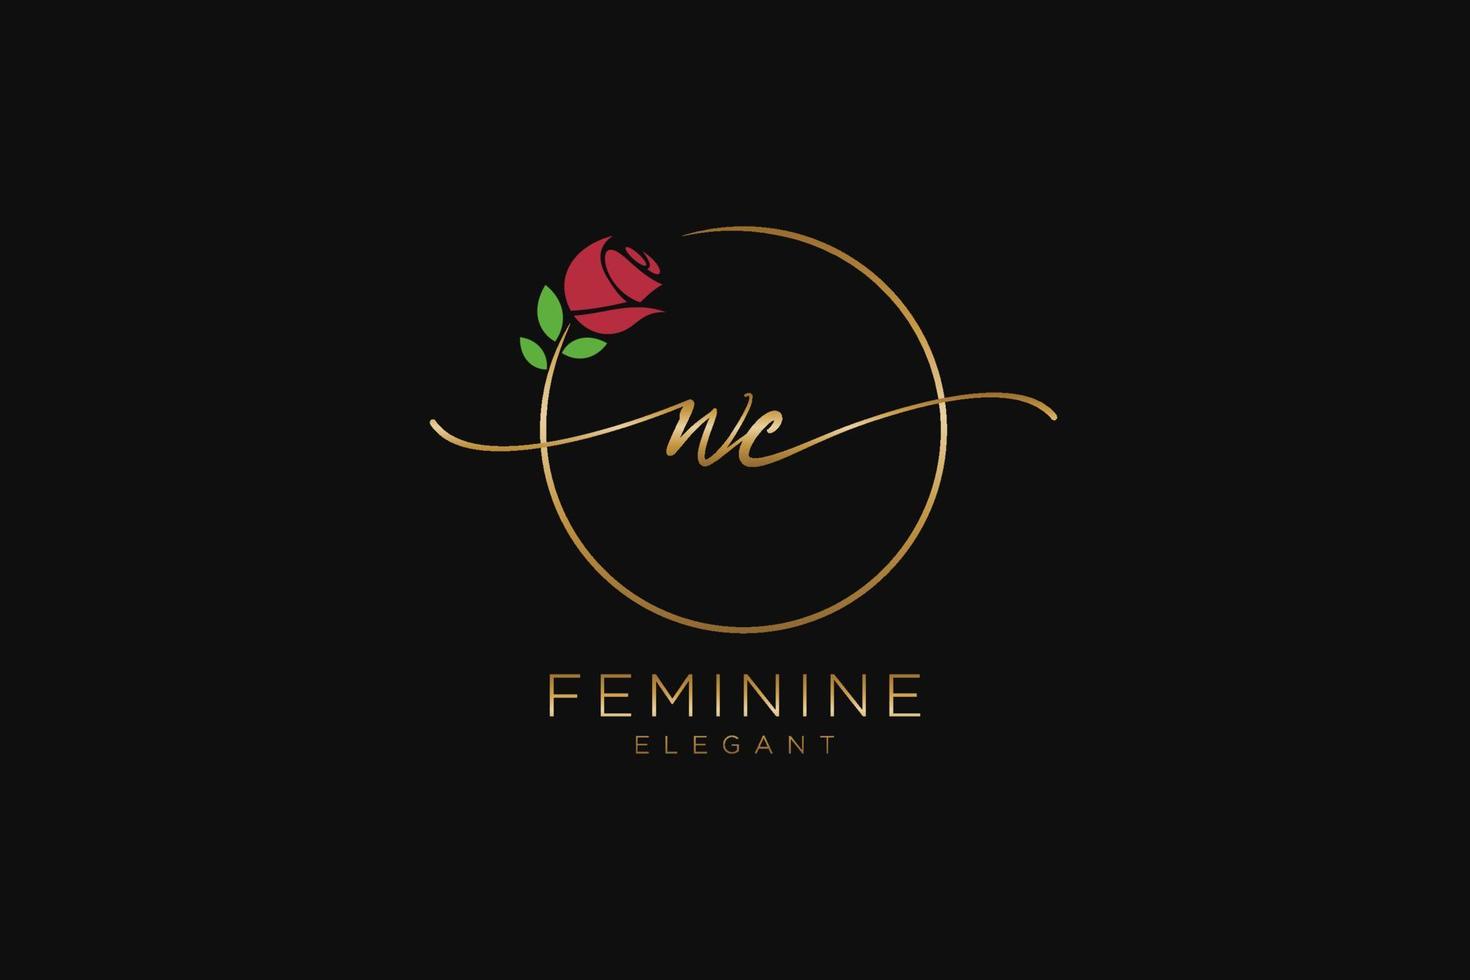 monograma de belleza del logotipo femenino wc inicial y diseño de logotipo elegante, logotipo de escritura a mano de la firma inicial, boda, moda, floral y botánica con plantilla creativa. vector